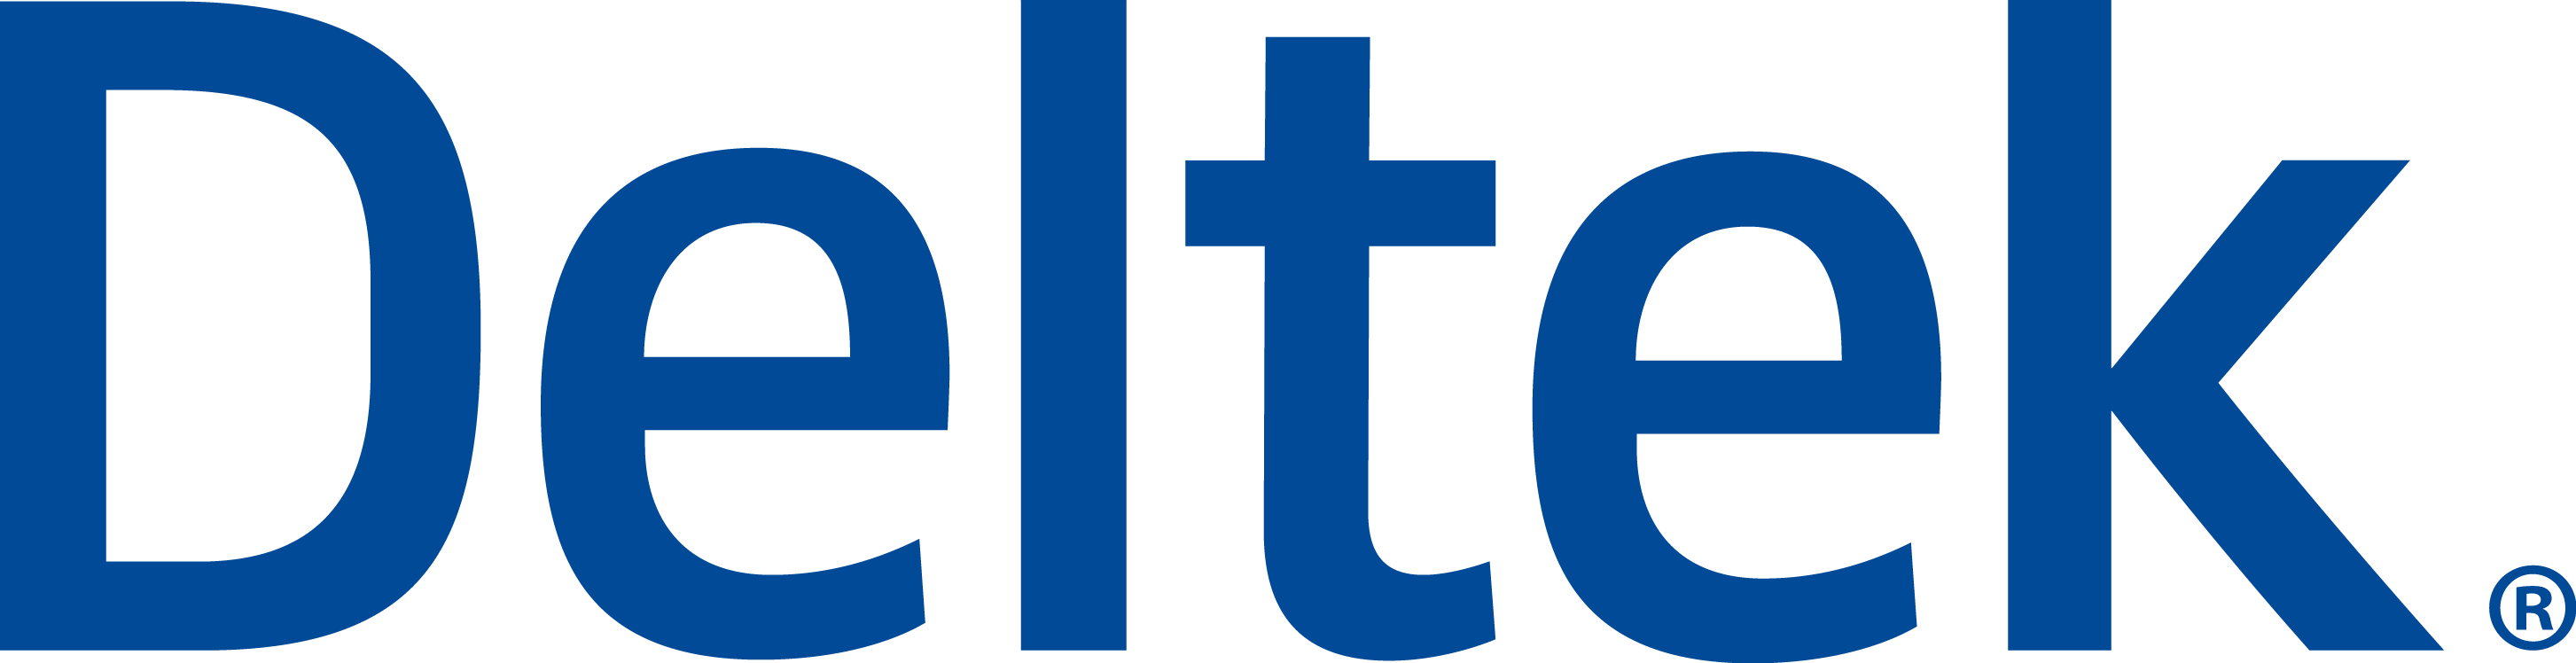 A business logo of Deltek